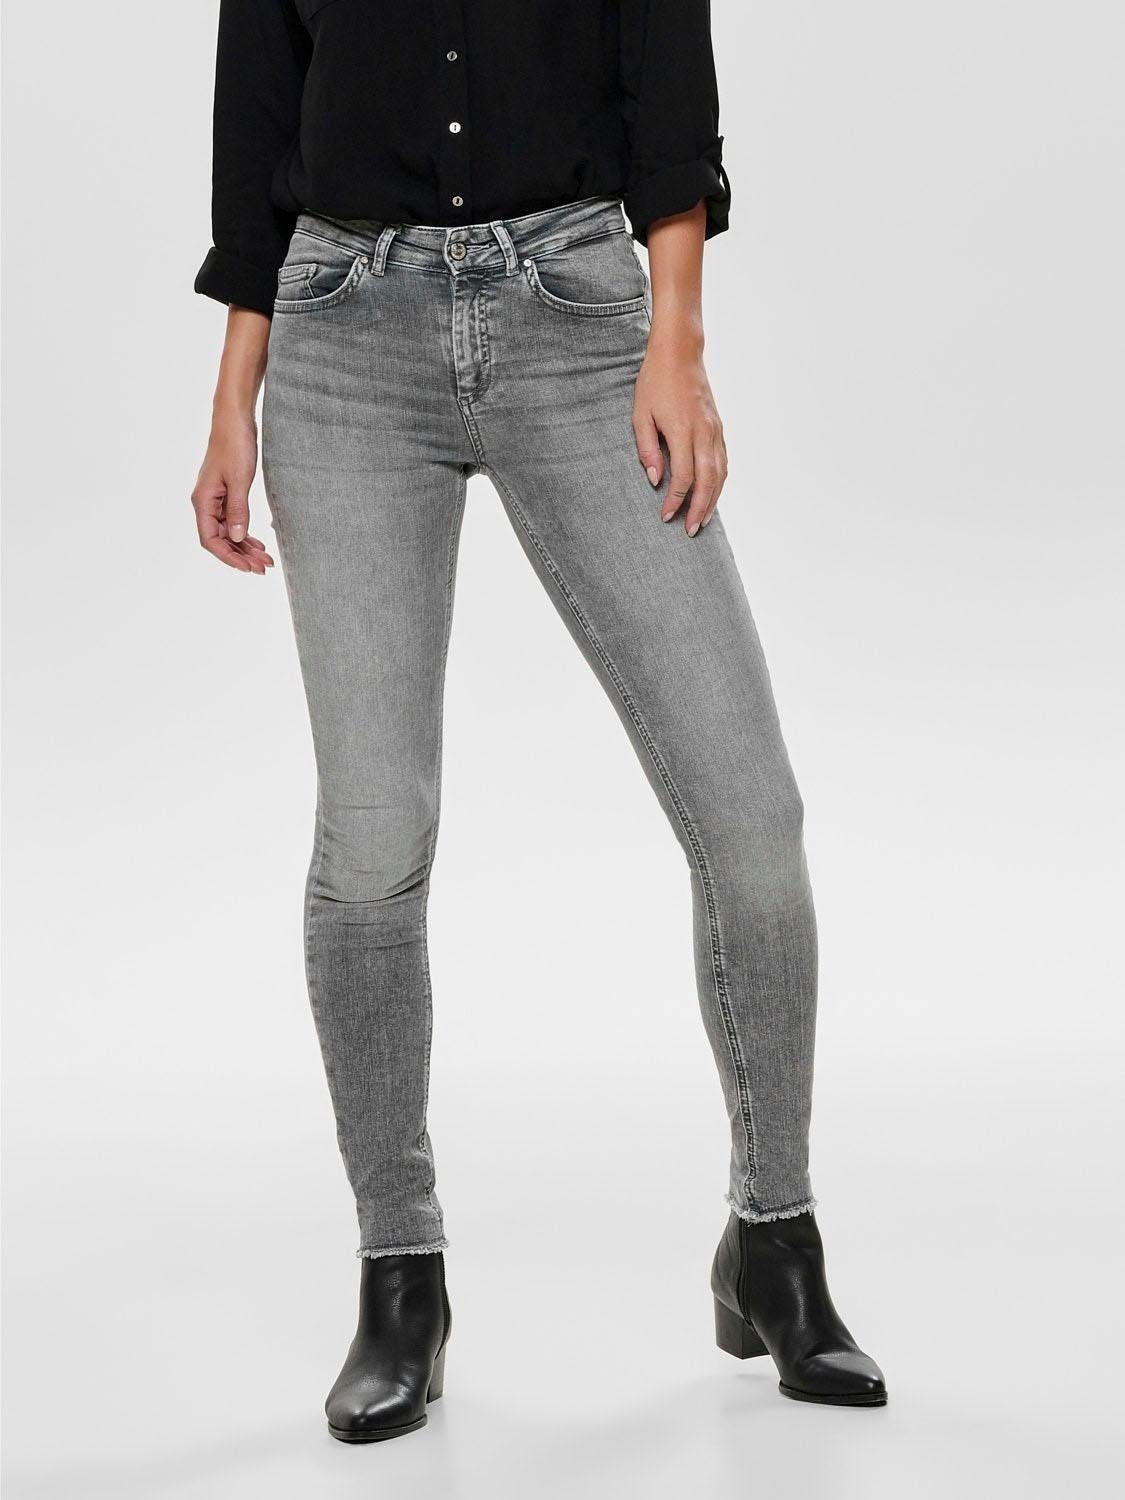 Graue Jeans mit niedrigem Bund für Damen online kaufen | OTTO | 